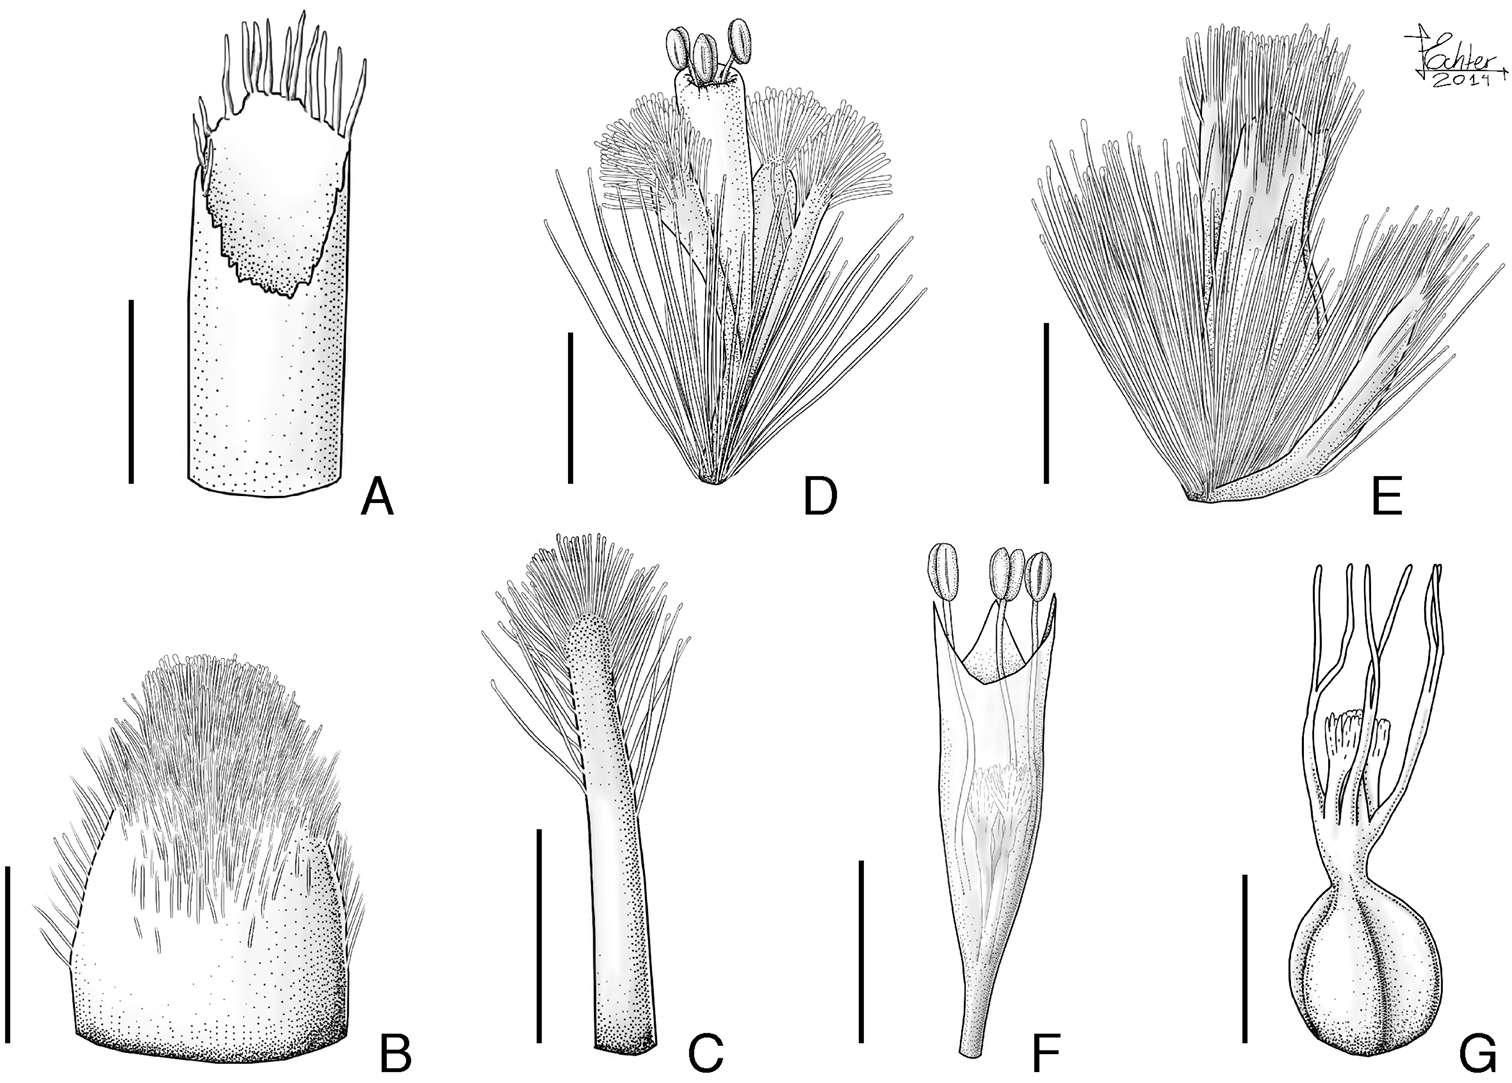 Eriocaulaceae (rights holder: Livia Echternacht, Marcelo Trovó)